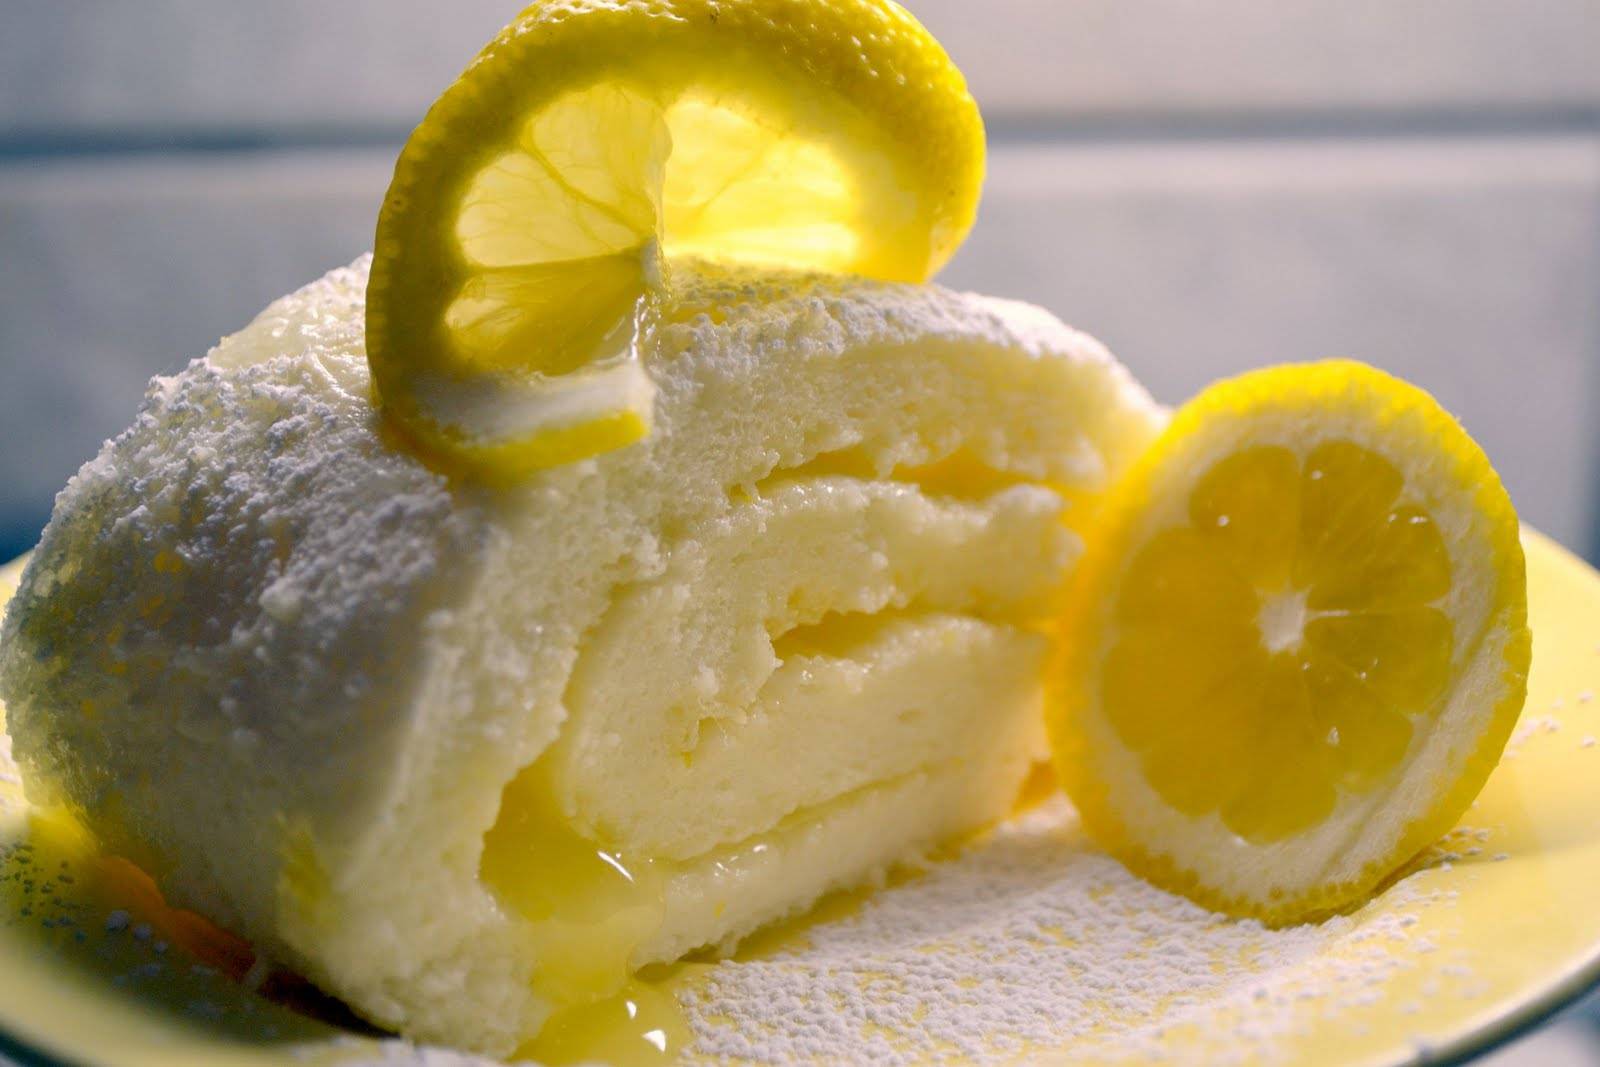 Как есть лимоны во время беременности, чтобы не навредить здоровью?